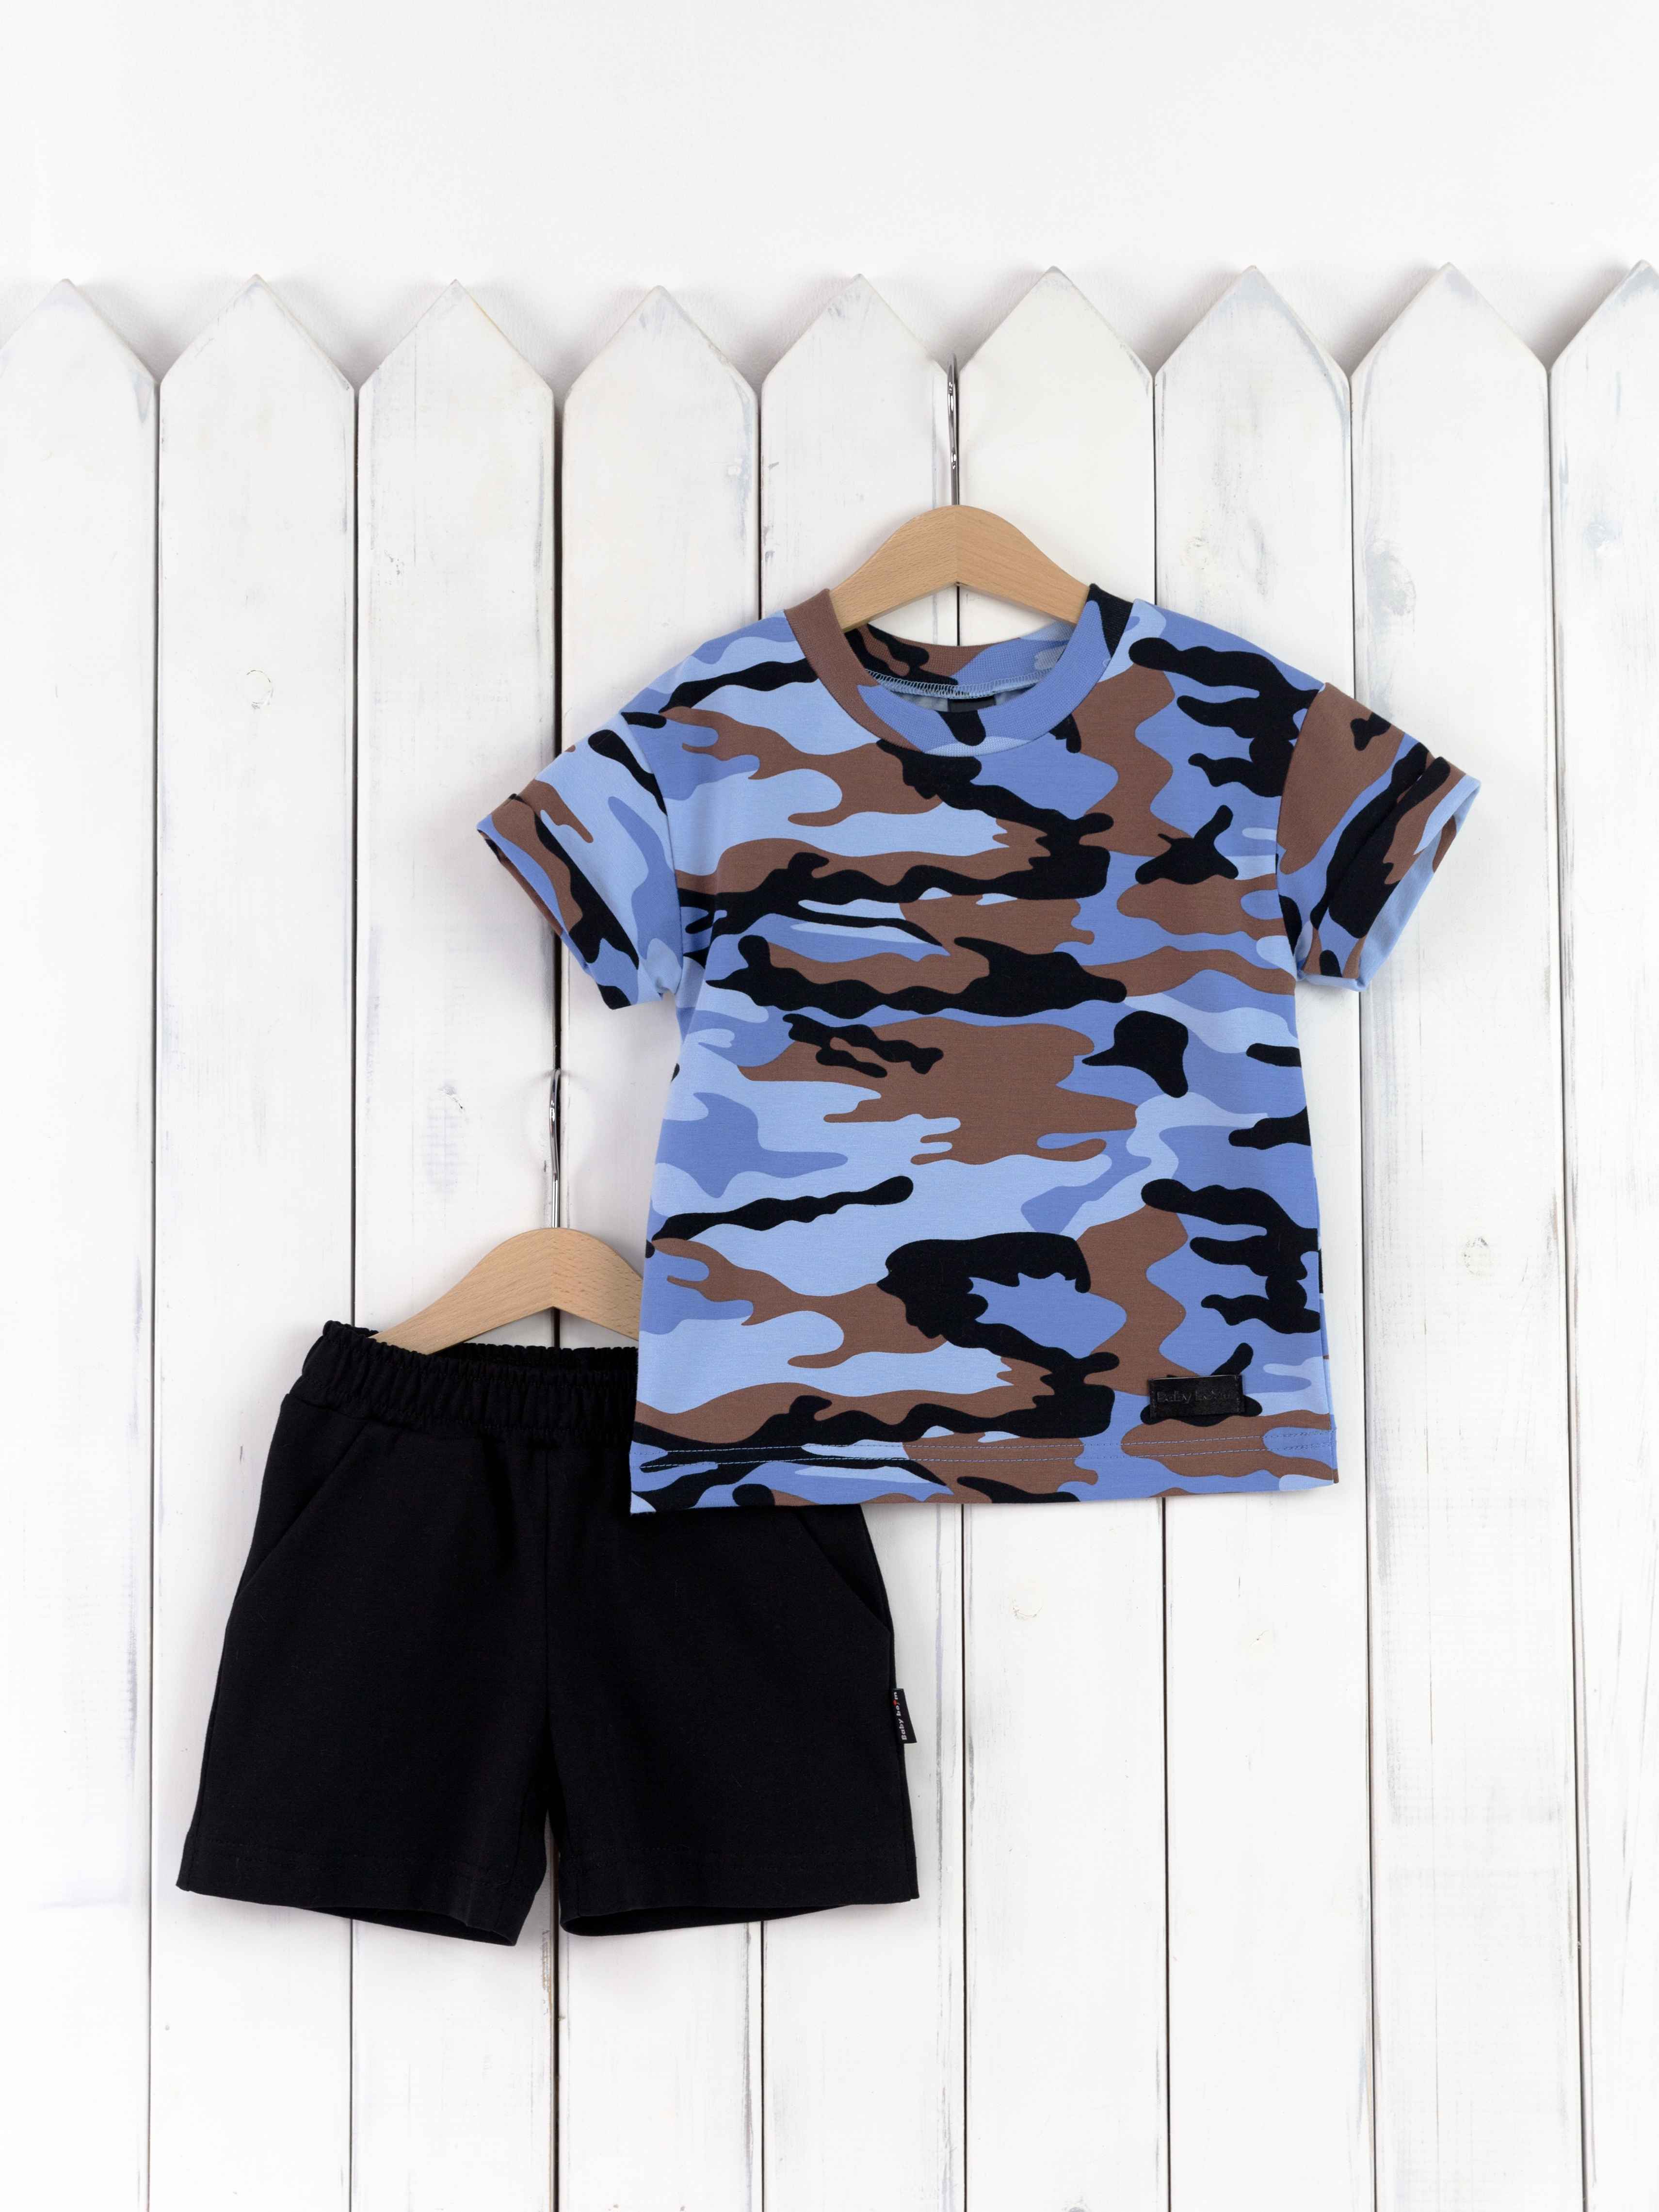 КД418/1-К Комплект детский р.104 футболка/милитари голубой+шорты/черный Бэби Бум